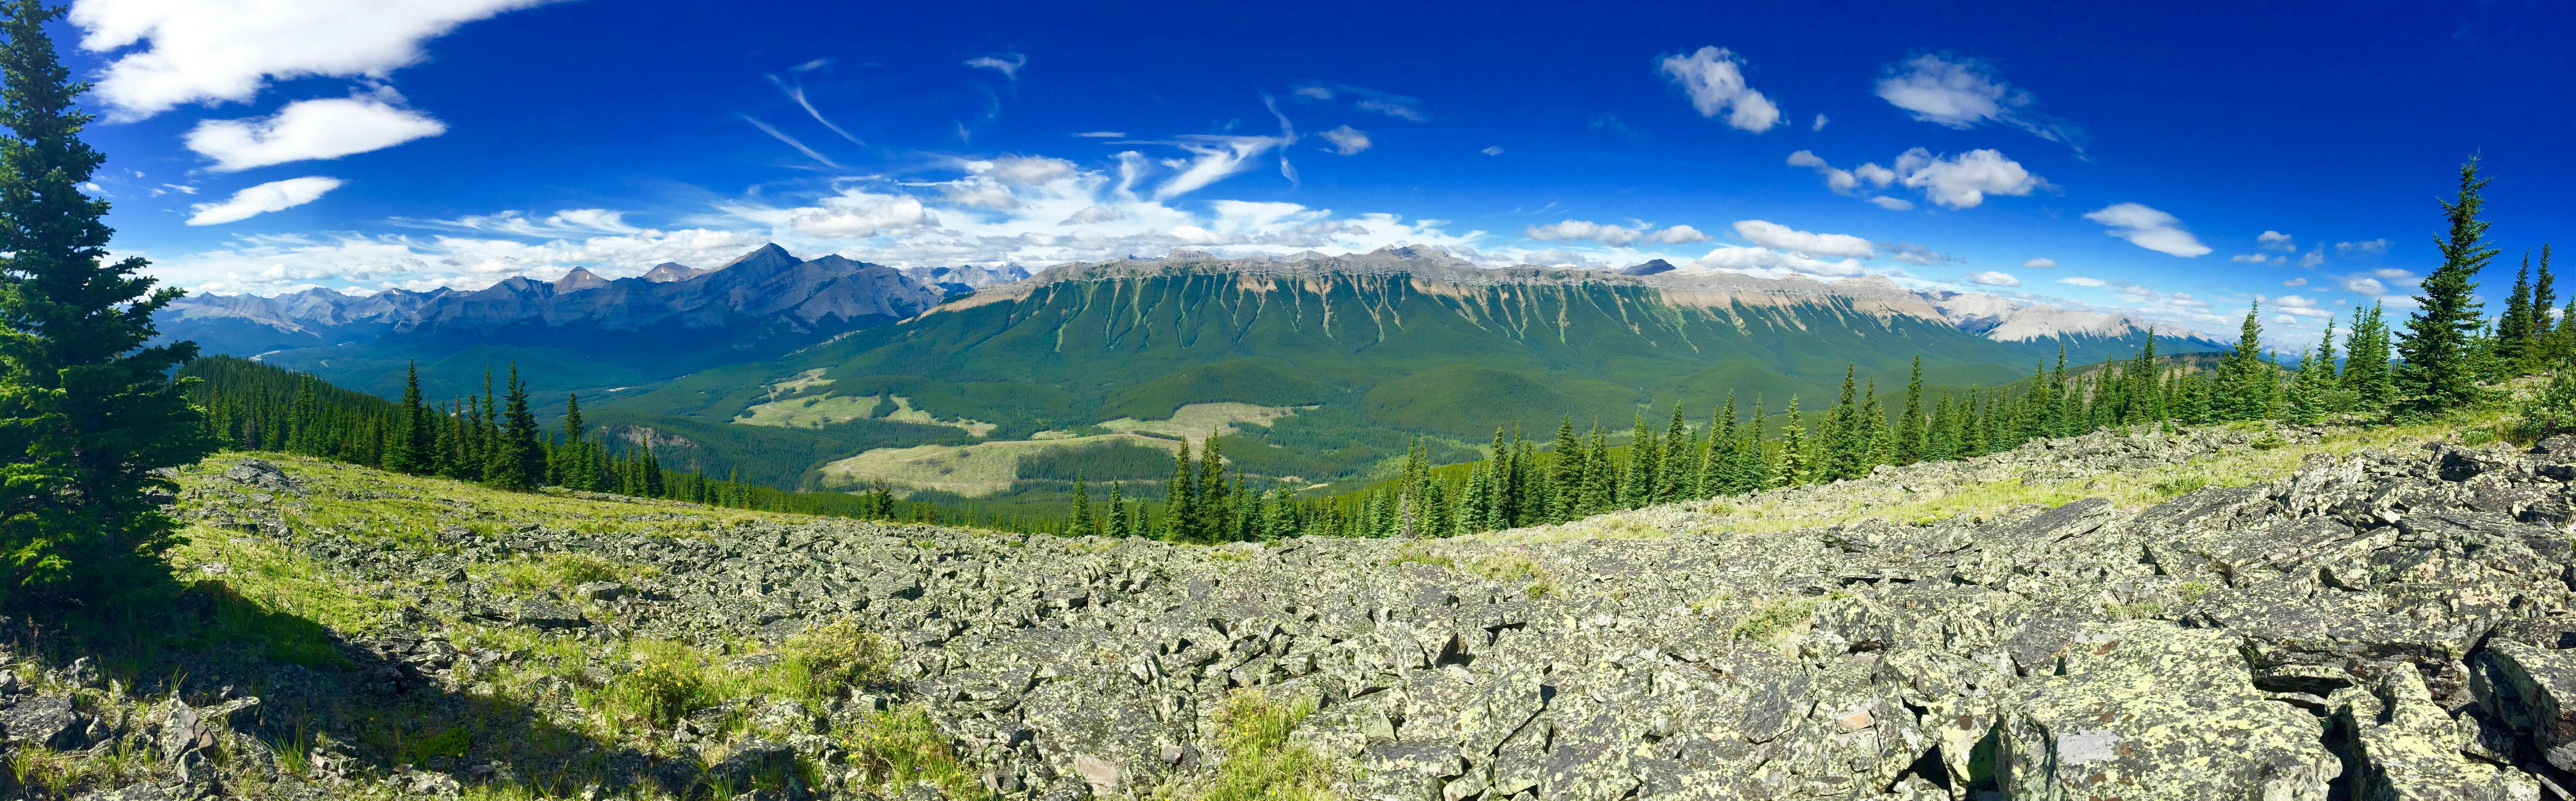 Free stock photo of Rocky Mountains Banff Mountain Range